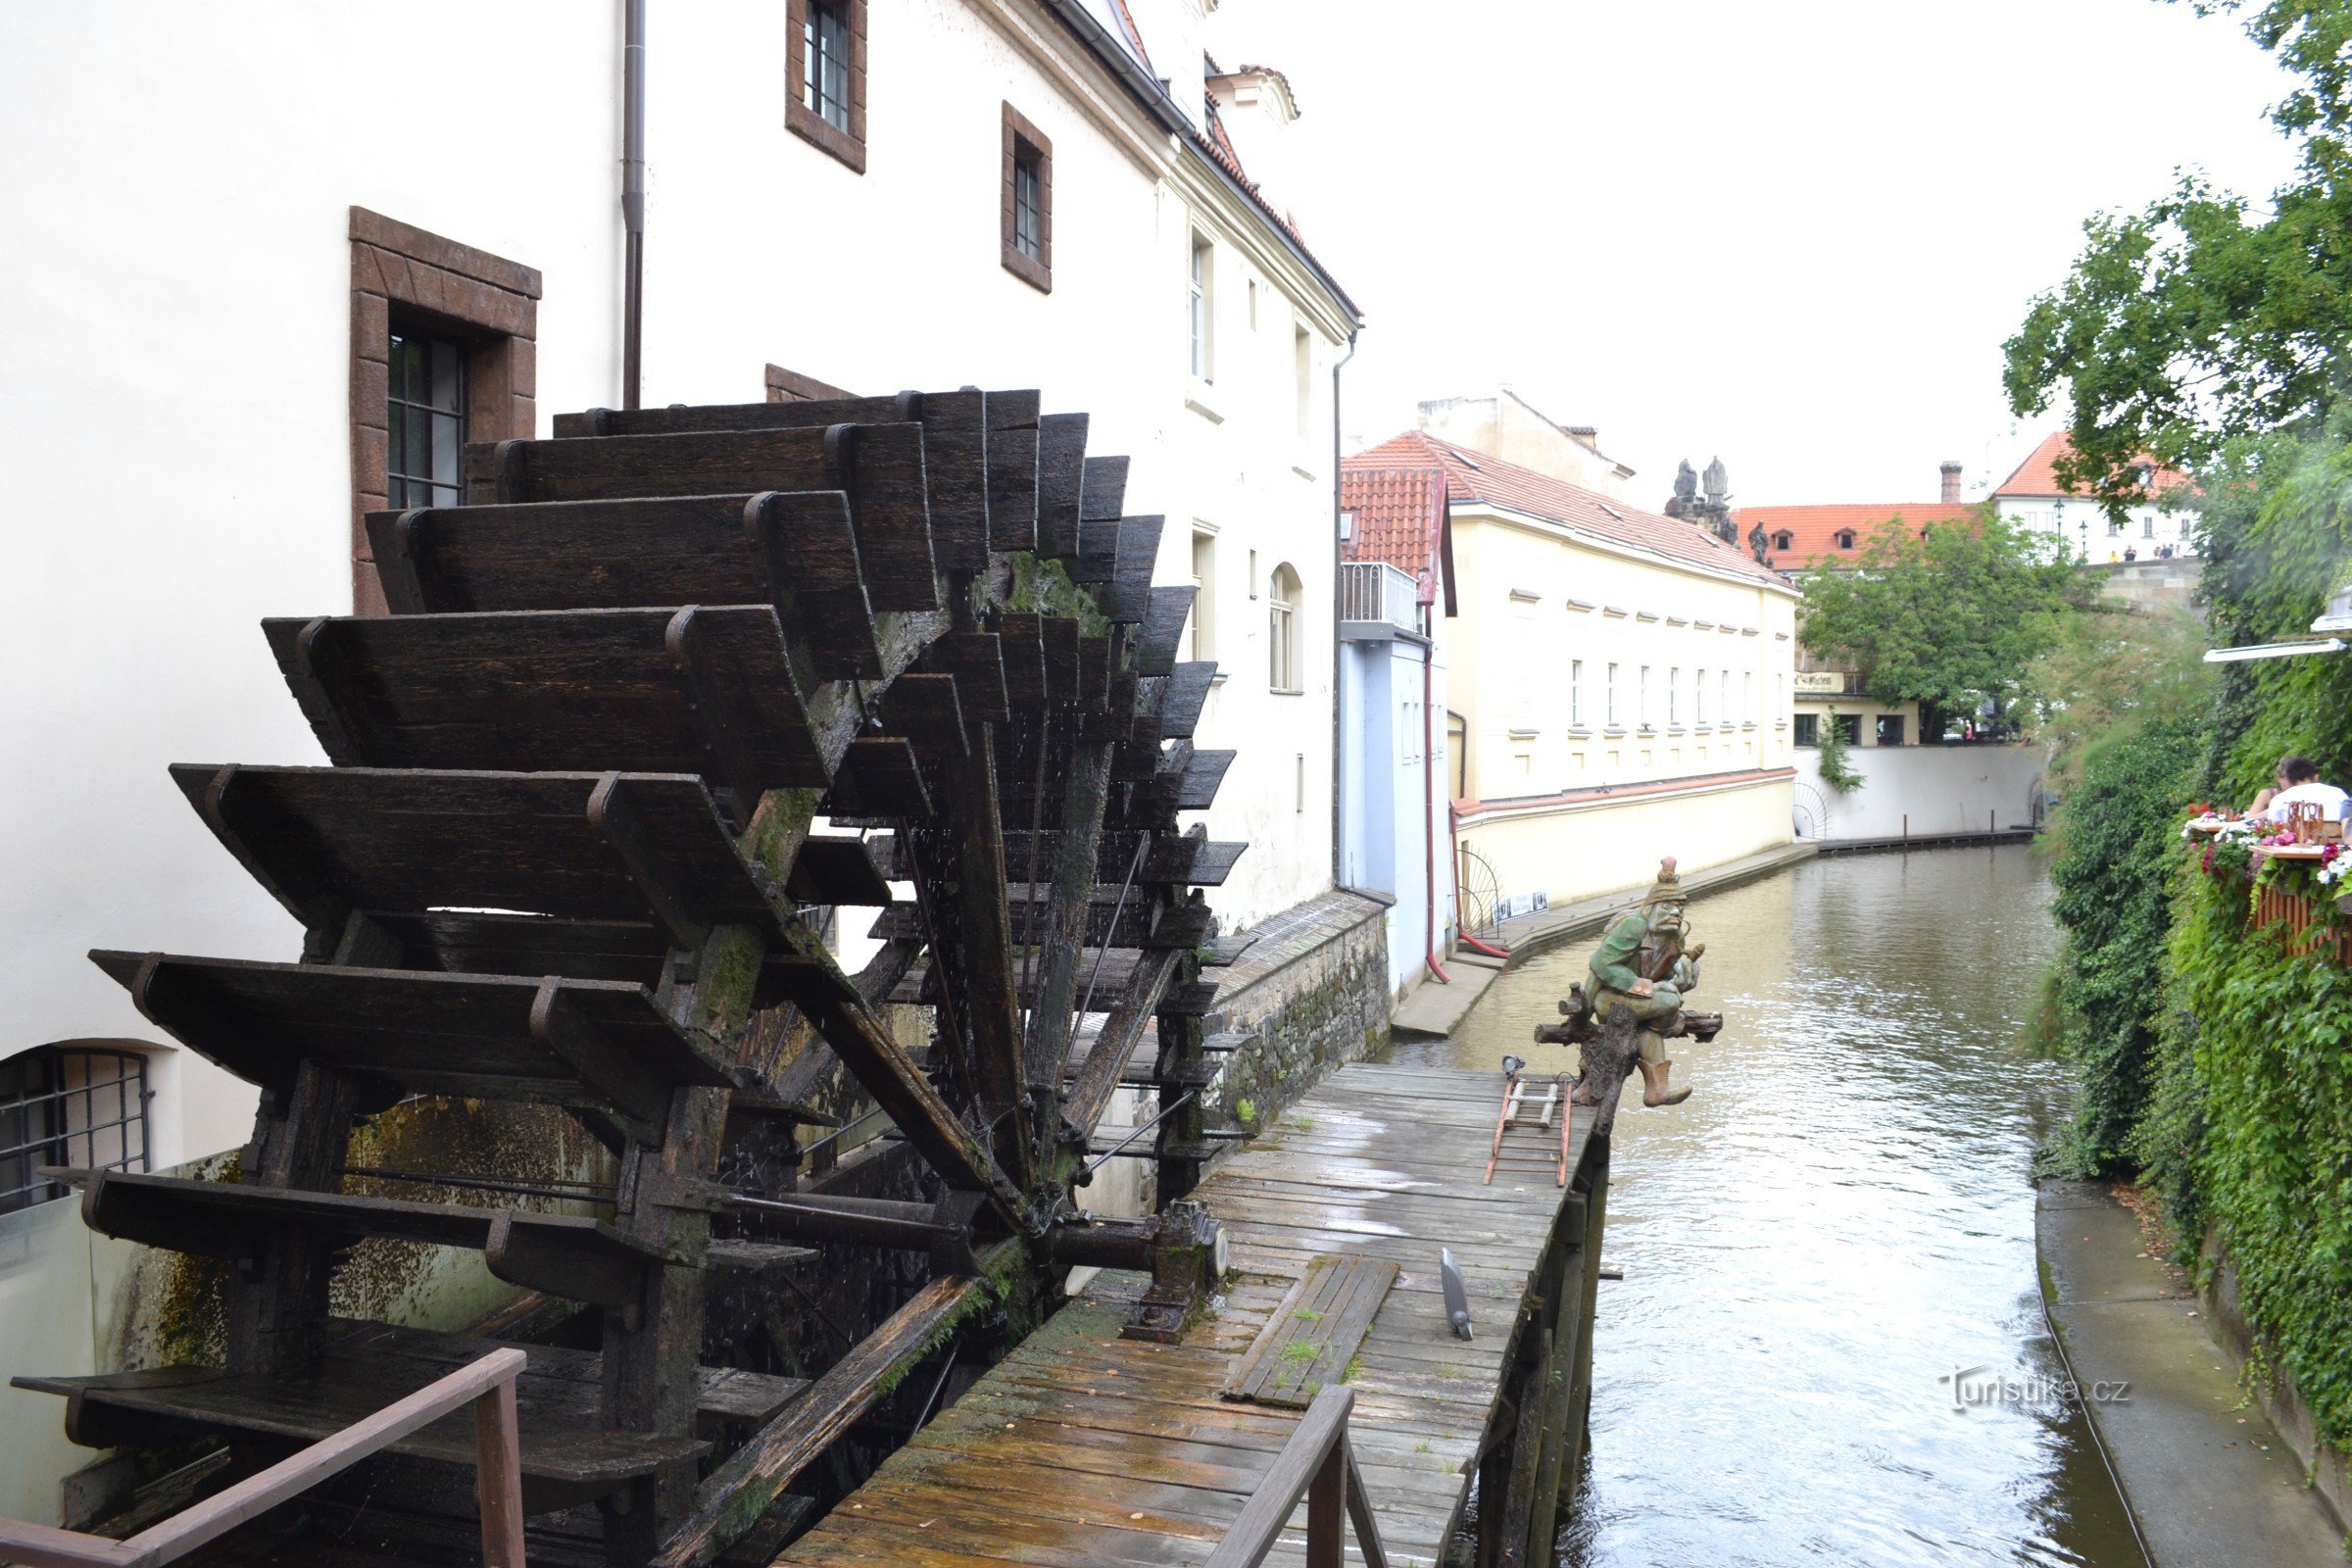 das Rad der Velkopřerovský-Mühle mit einer Wasserpumpe